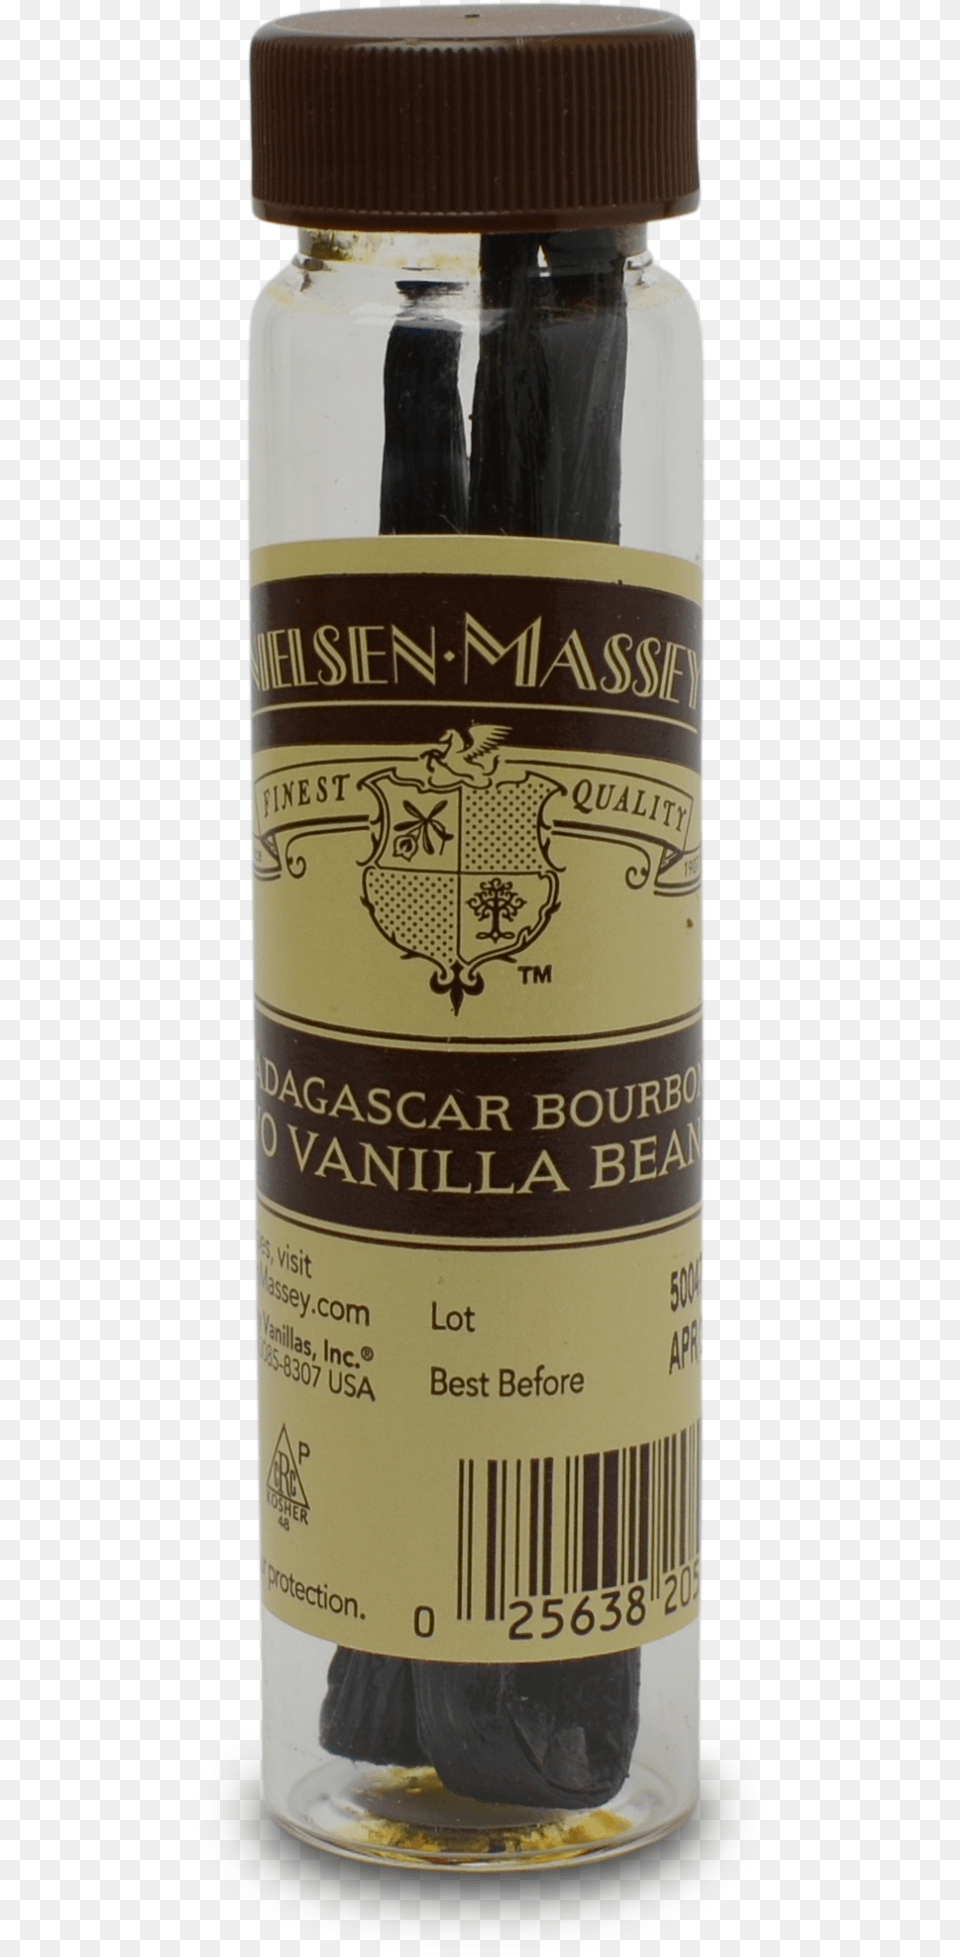 Kosher Nielsen Massey Madagascar Bourbon Vanilla Beans Nielsen Massey Madagascar Bourbon Pure Vanilla Bean, Jar, Alcohol, Beer, Beverage Free Transparent Png